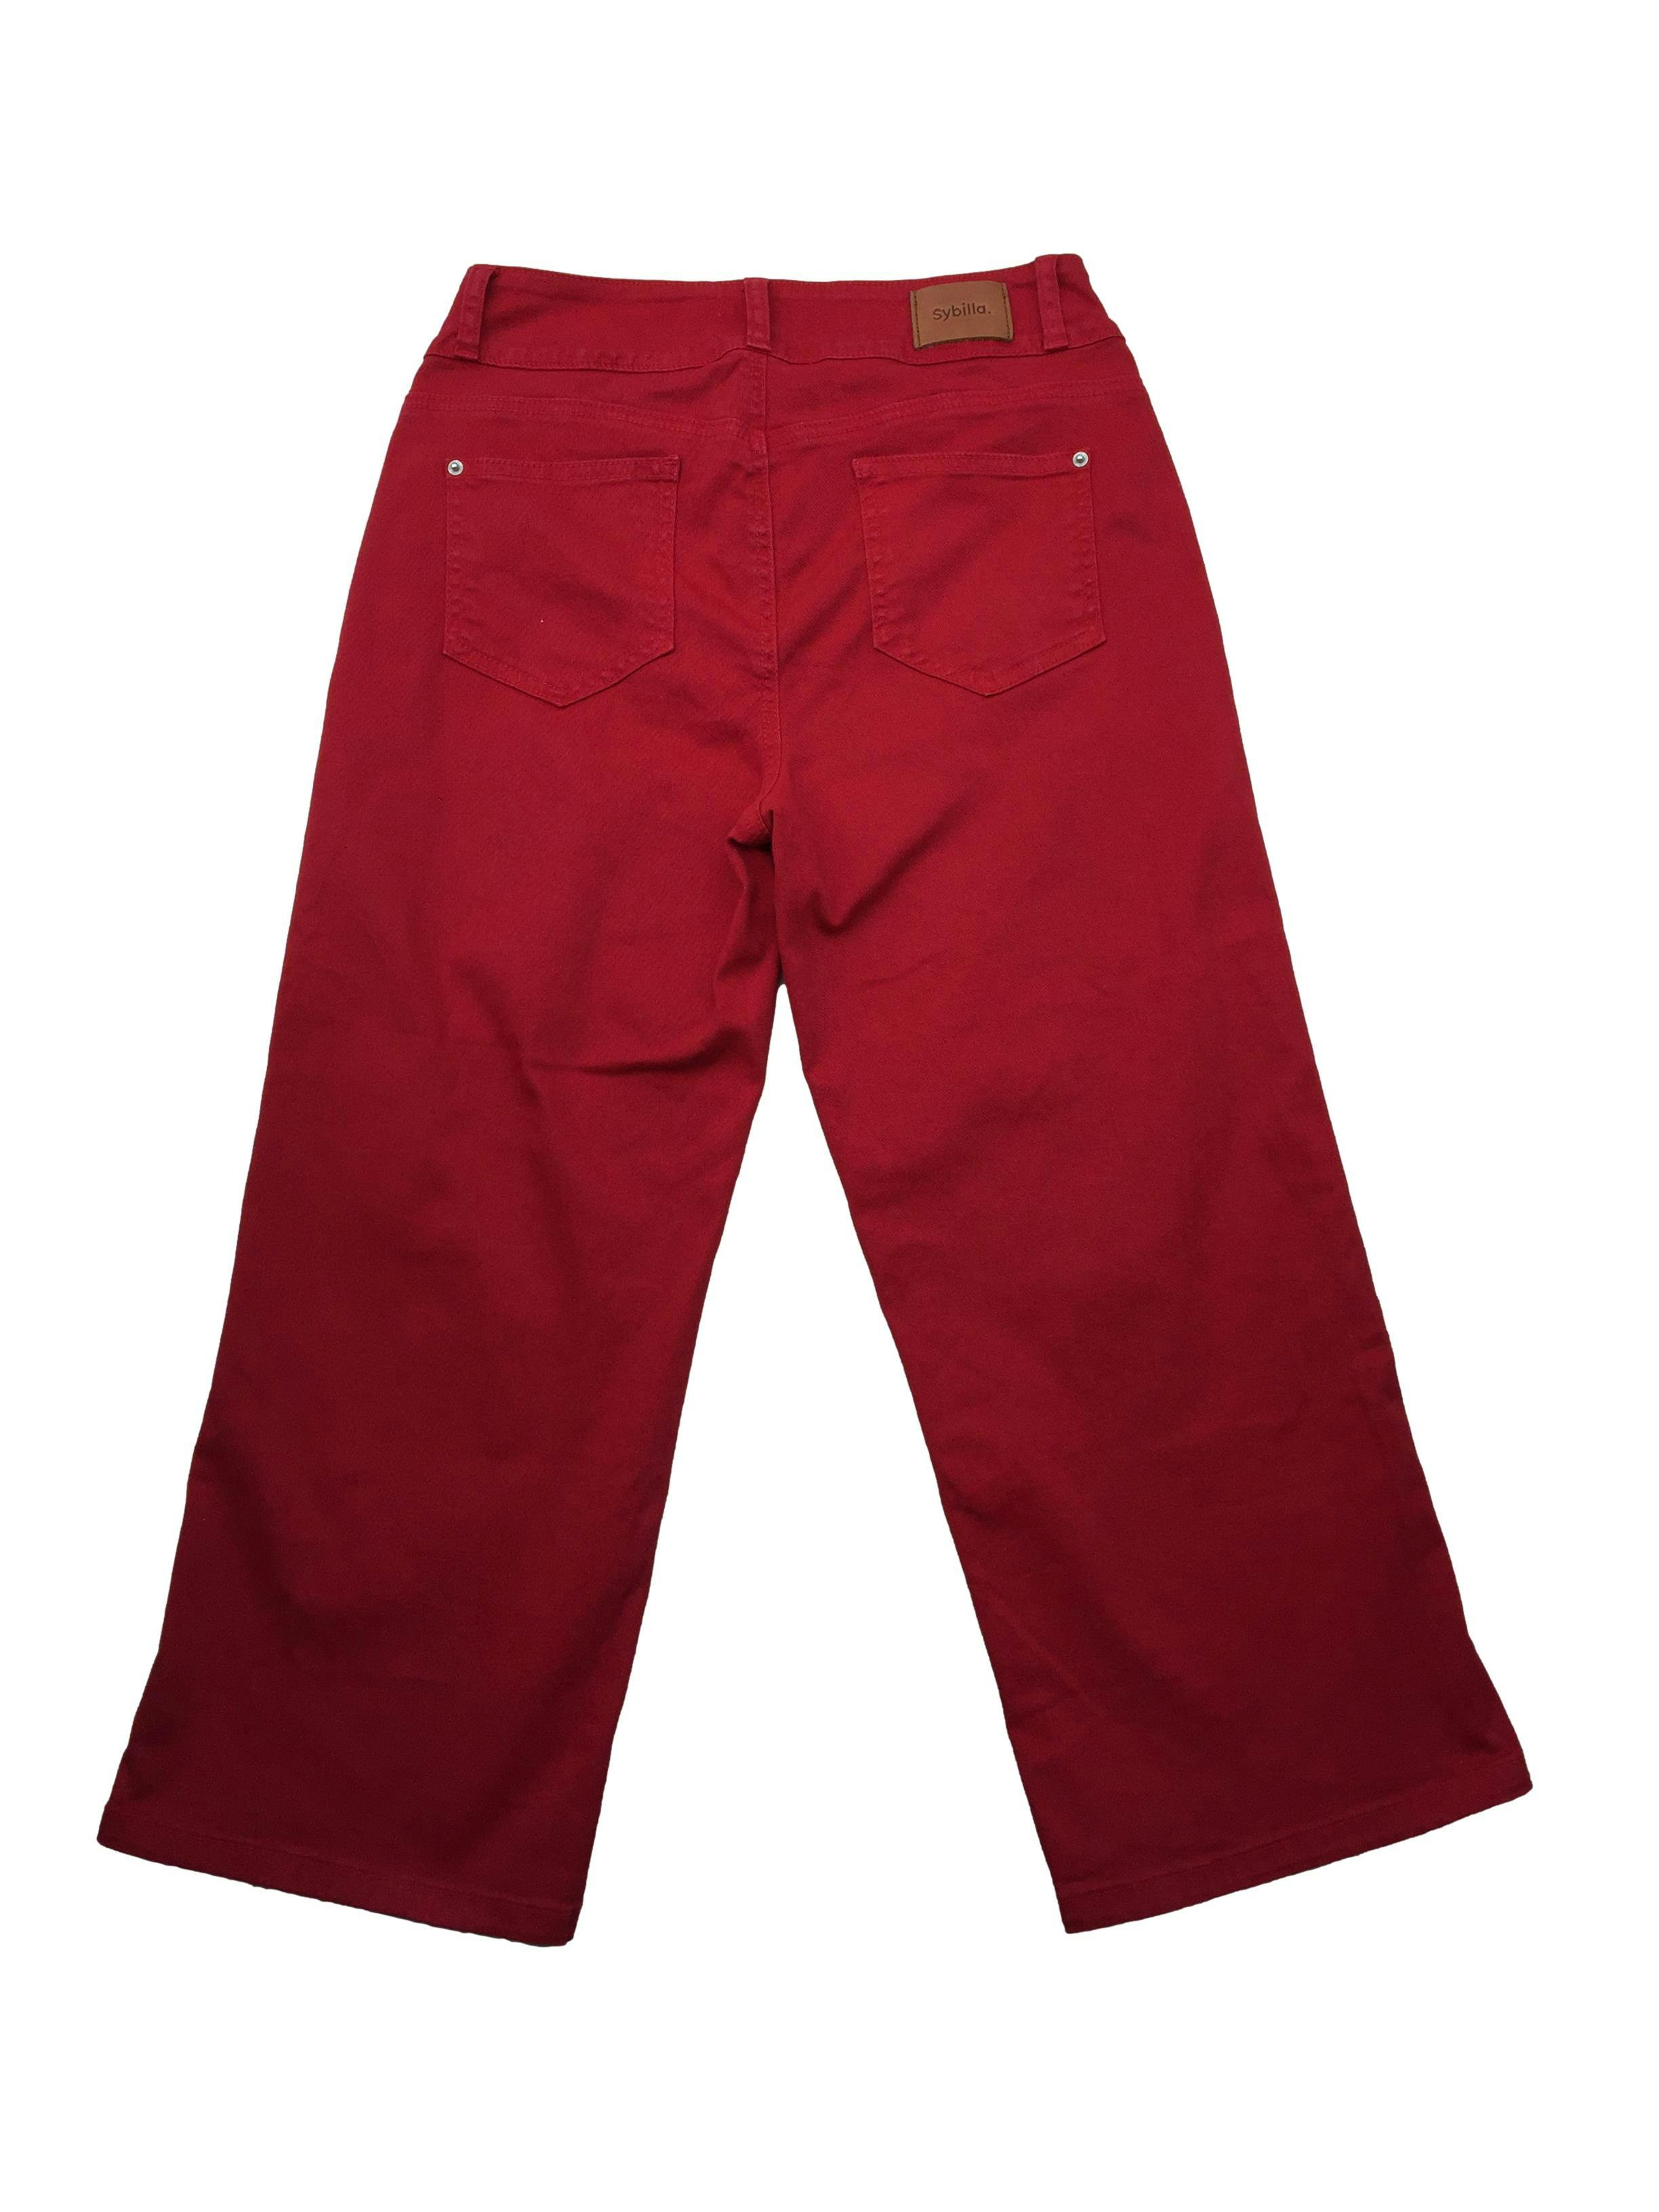 Pantalón Sybilla culotte rojo con correa, bolsillos. Cintura: 70cm, Tiro: 26cm, Largo: 81cm